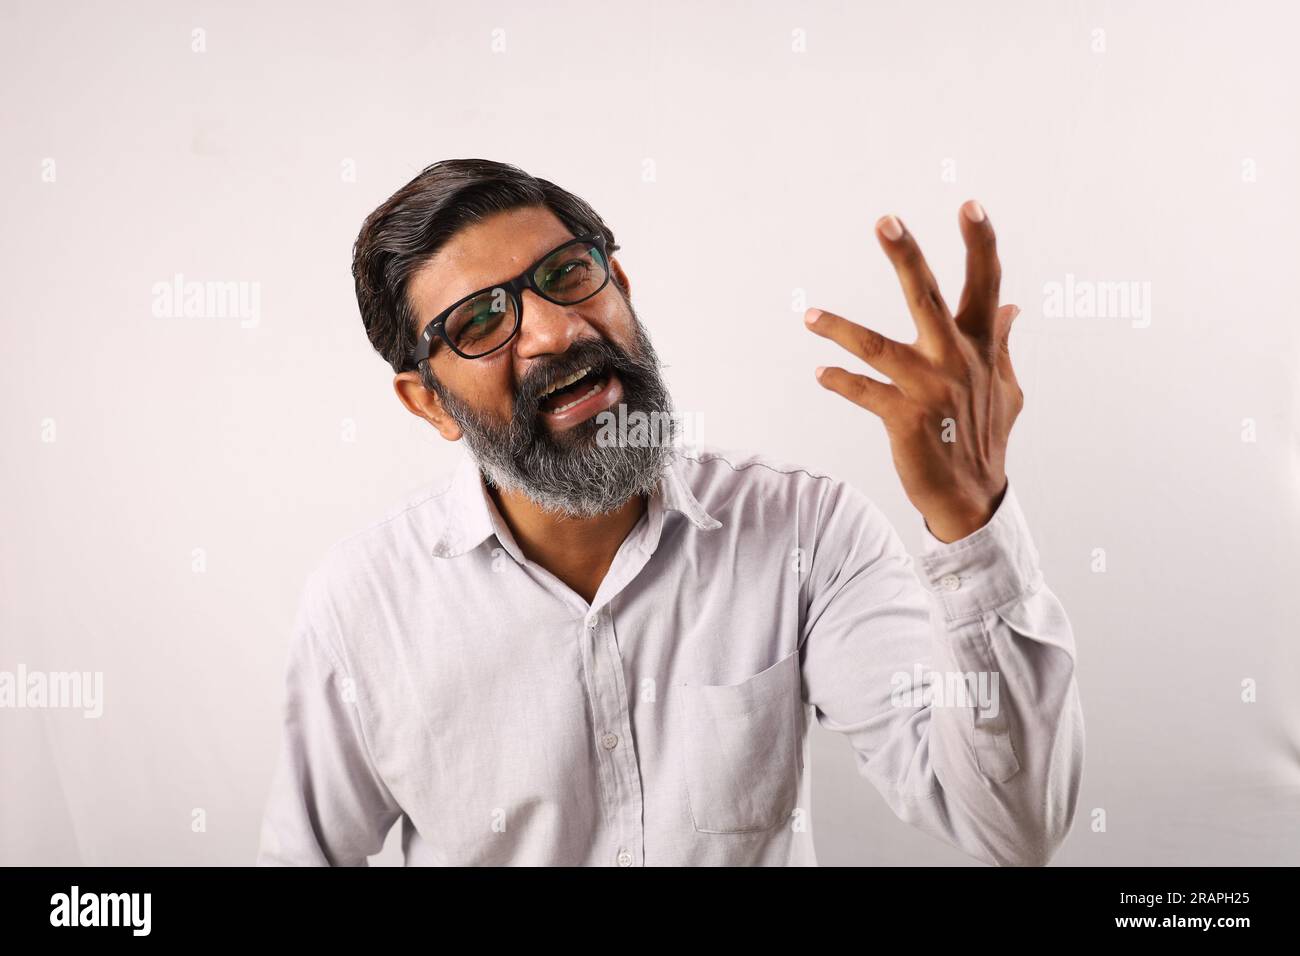 Ritratto di un uomo barbato indiano che indossa una camicia. Espressioni funky che ritraggono il senso di realizzazione e di realizzazione. Sentirsi fieri di eseguire le cose. Foto Stock